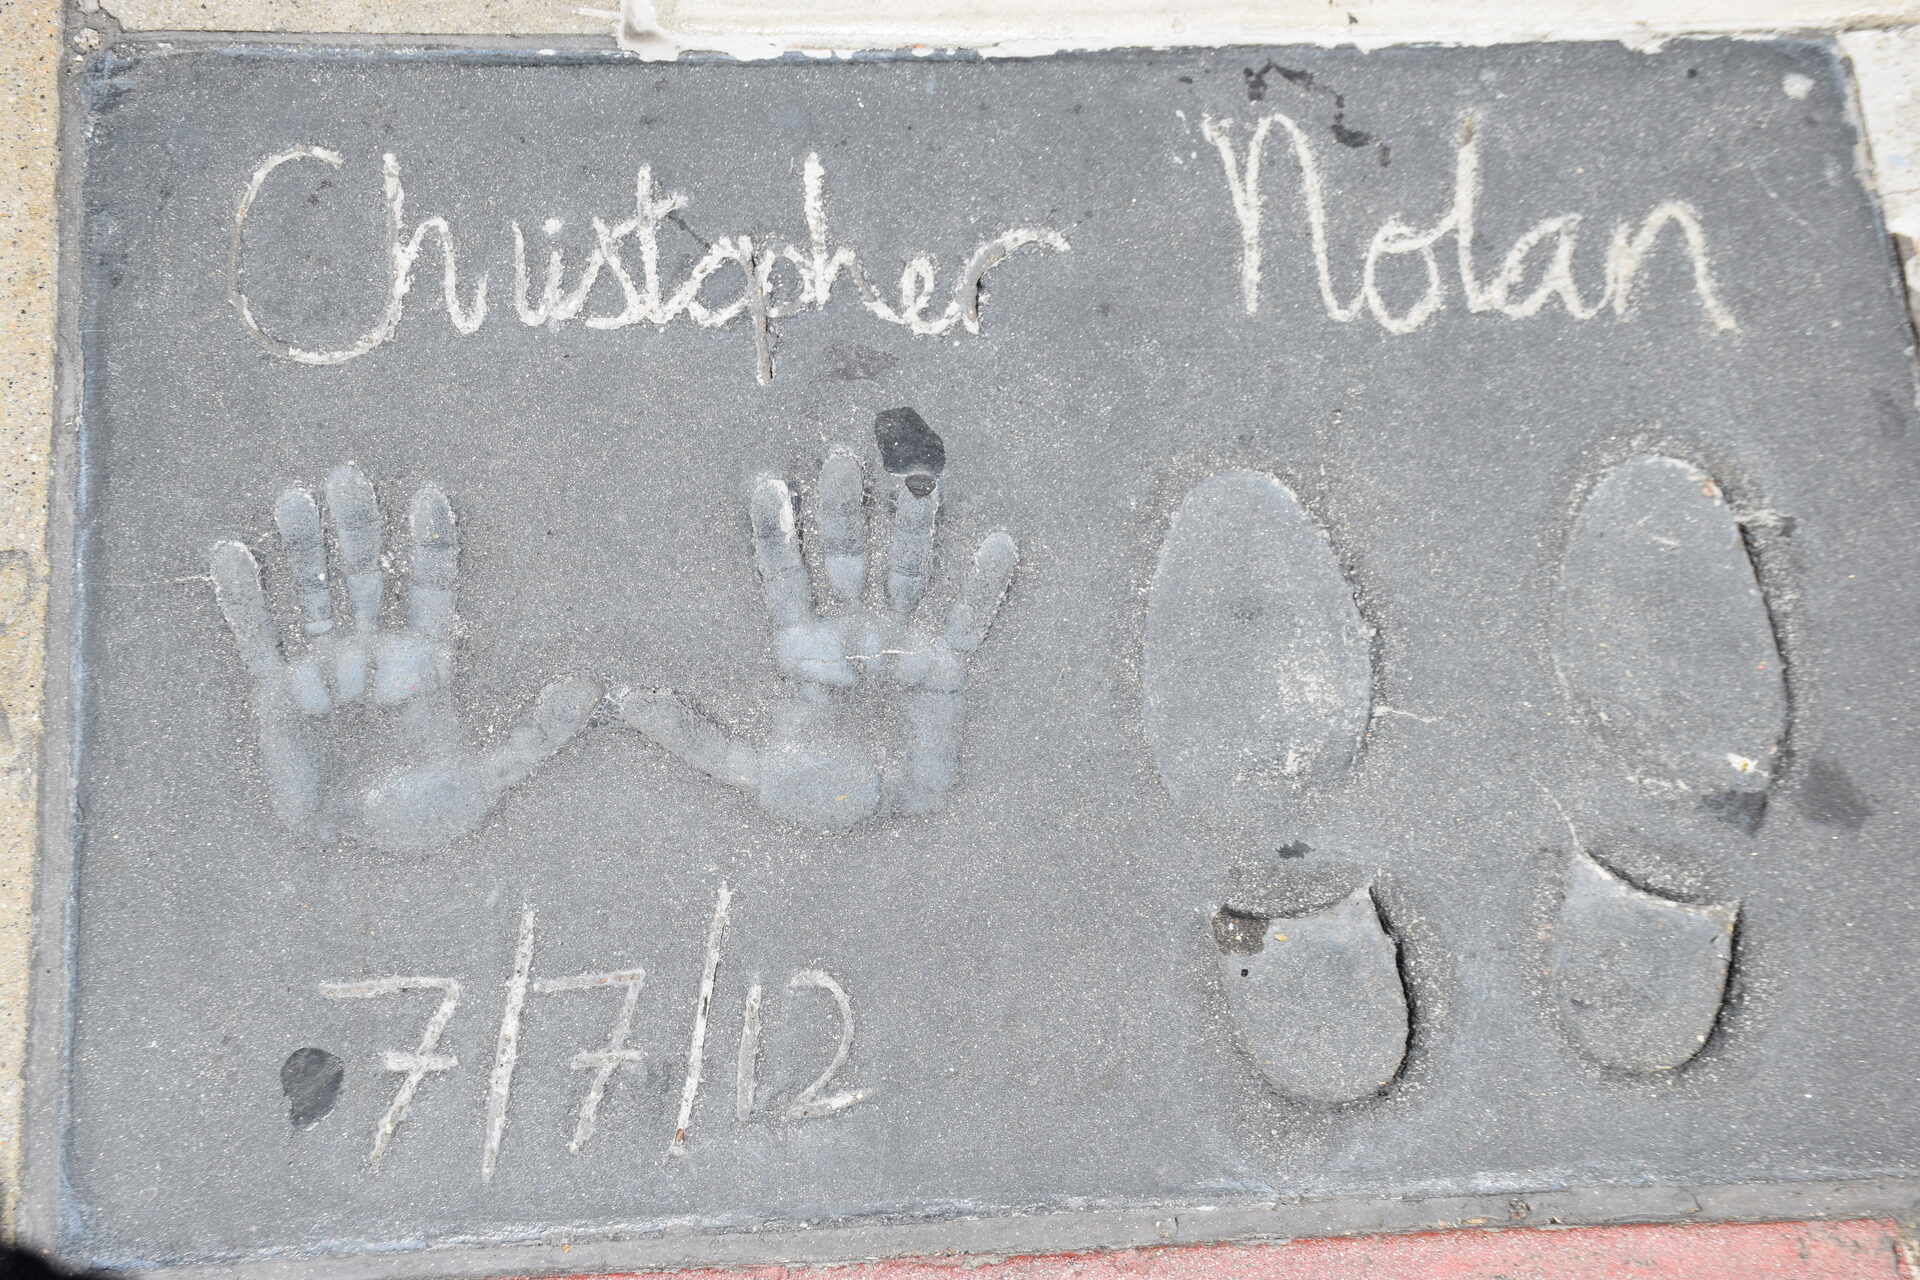 クリストファー・ノーランの手形と靴跡